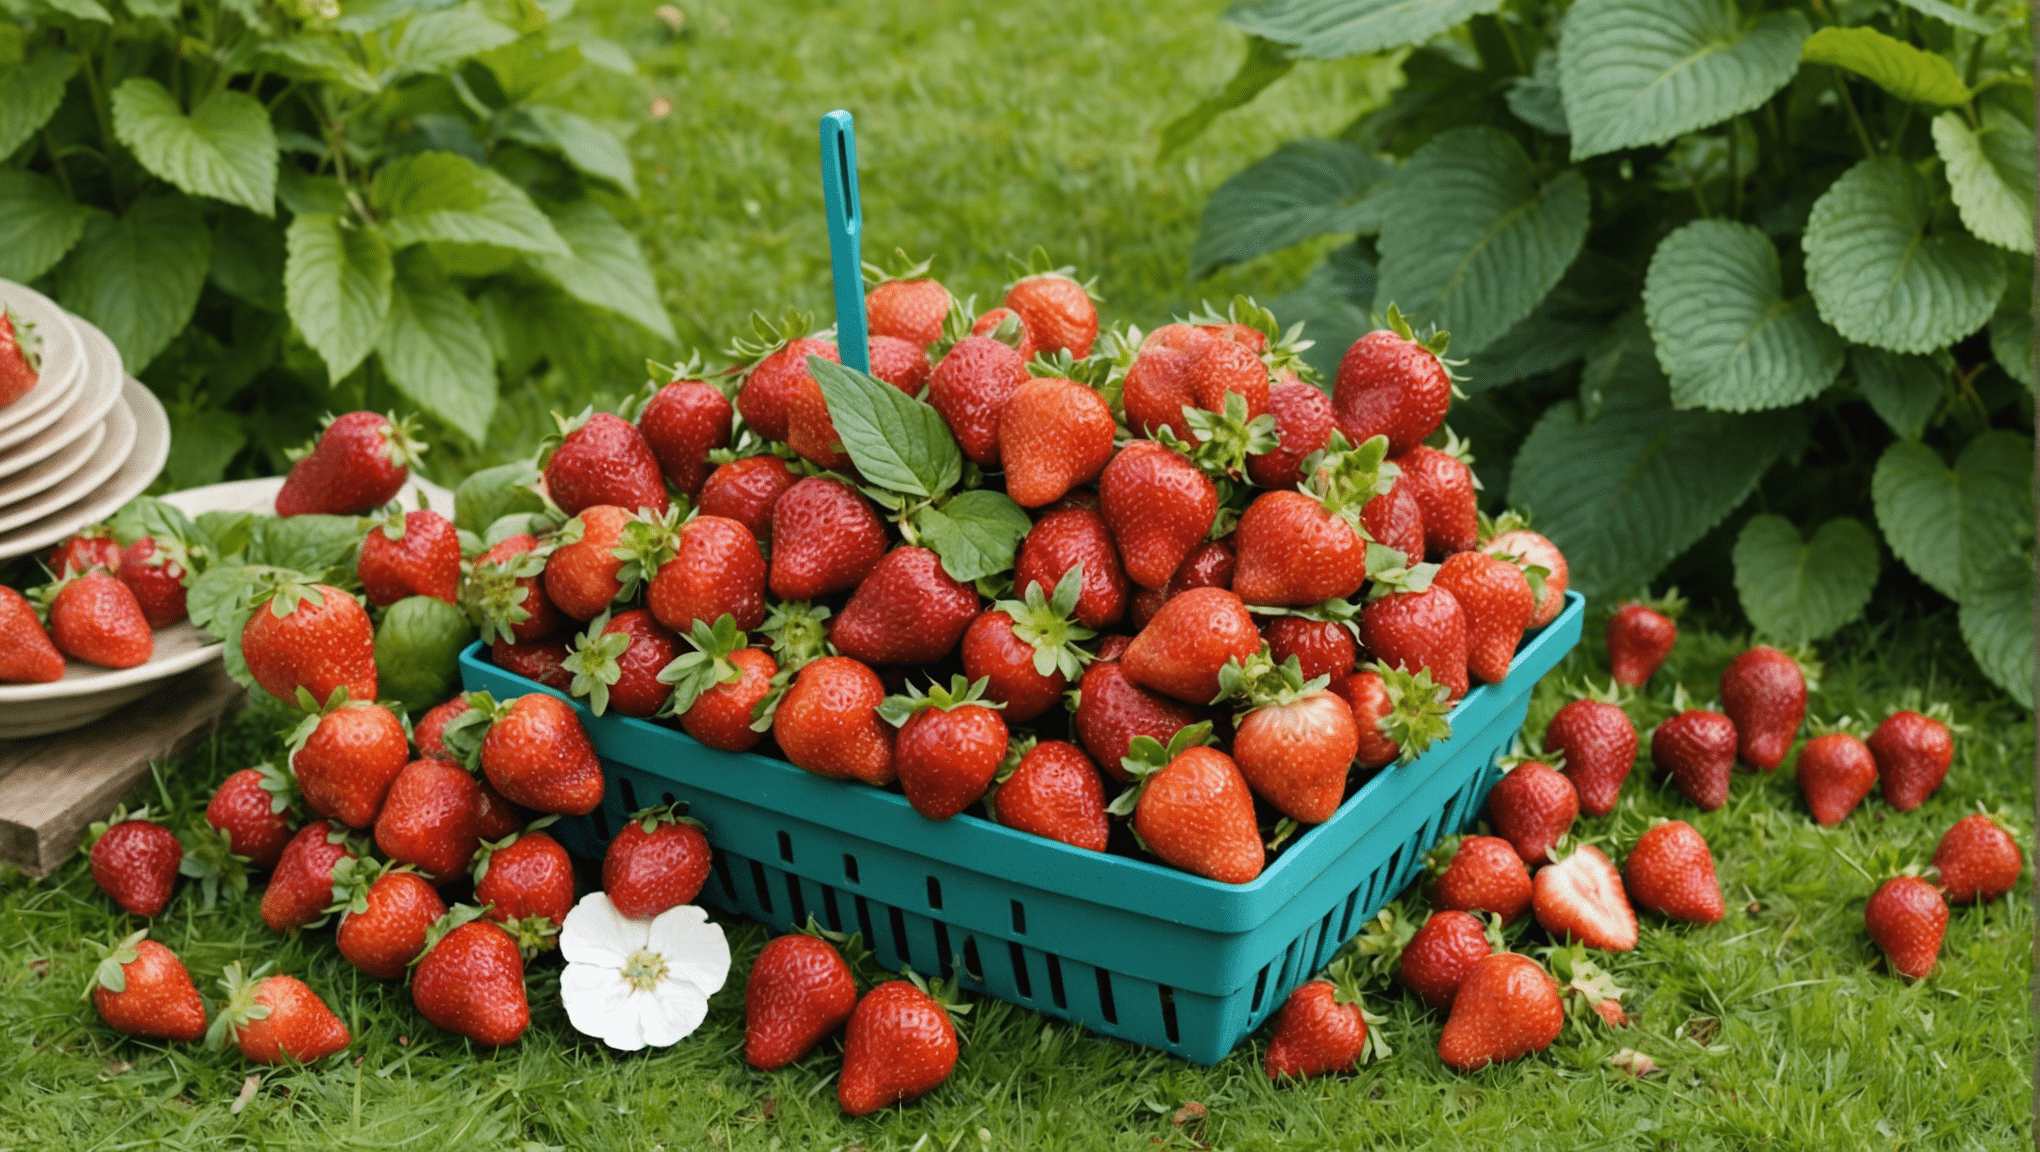 découvrez les étapes pour créer un paradis de fraisiers dans votre jardin et profitez d'une abondance de délicieux fruits rouges grâce à nos conseils pratiques et faciles à suivre.